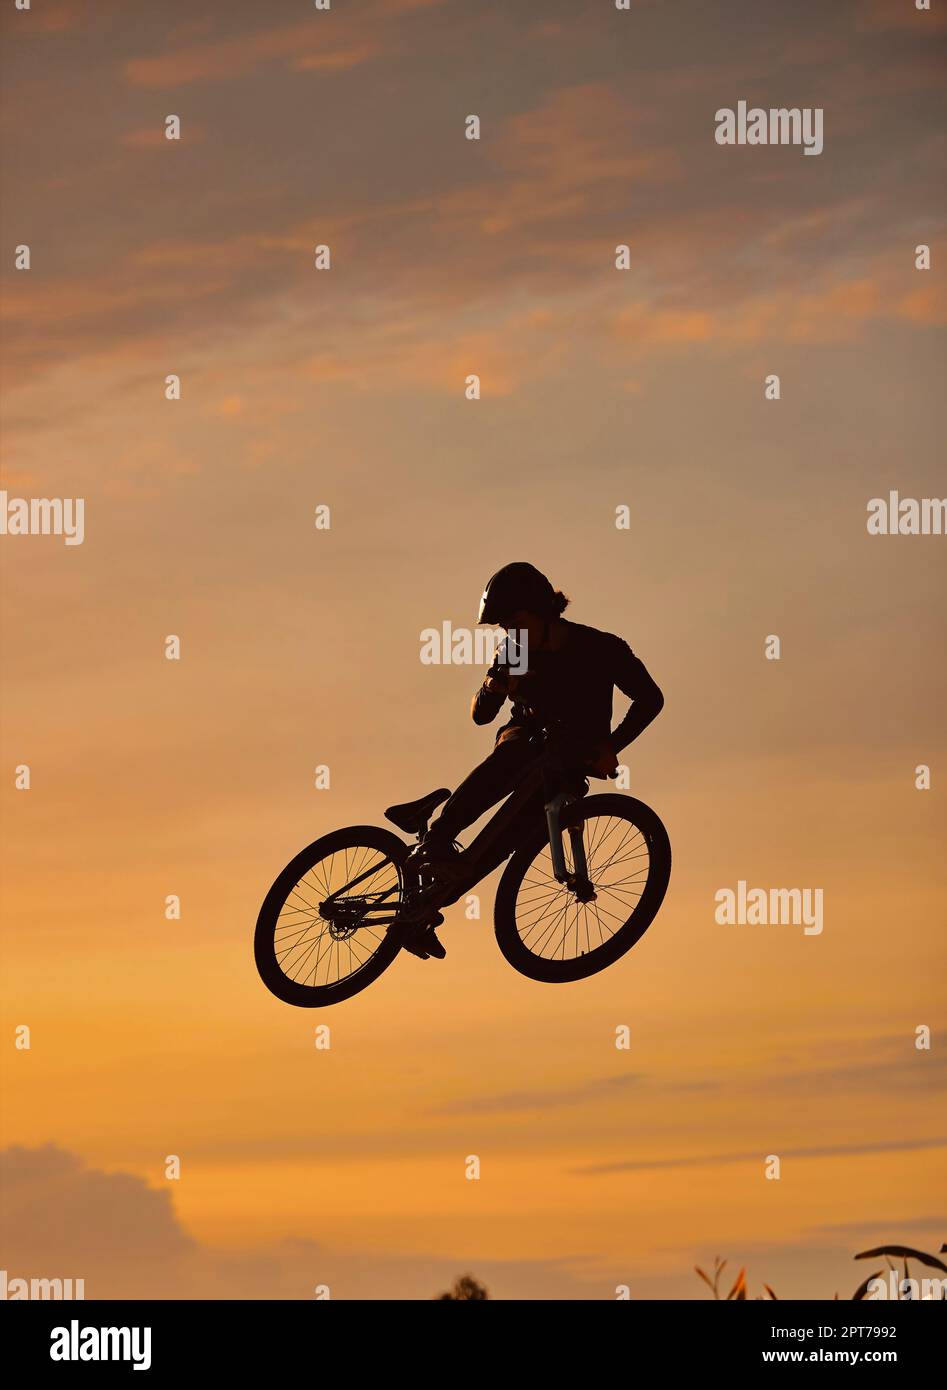 Mountain bike, ciclista e fitness jump al tramonto nella natura della campagna del Colorado in allenamento, esercizio fisico o allenamento. Pericolo, sport estremi BMX o. Foto Stock